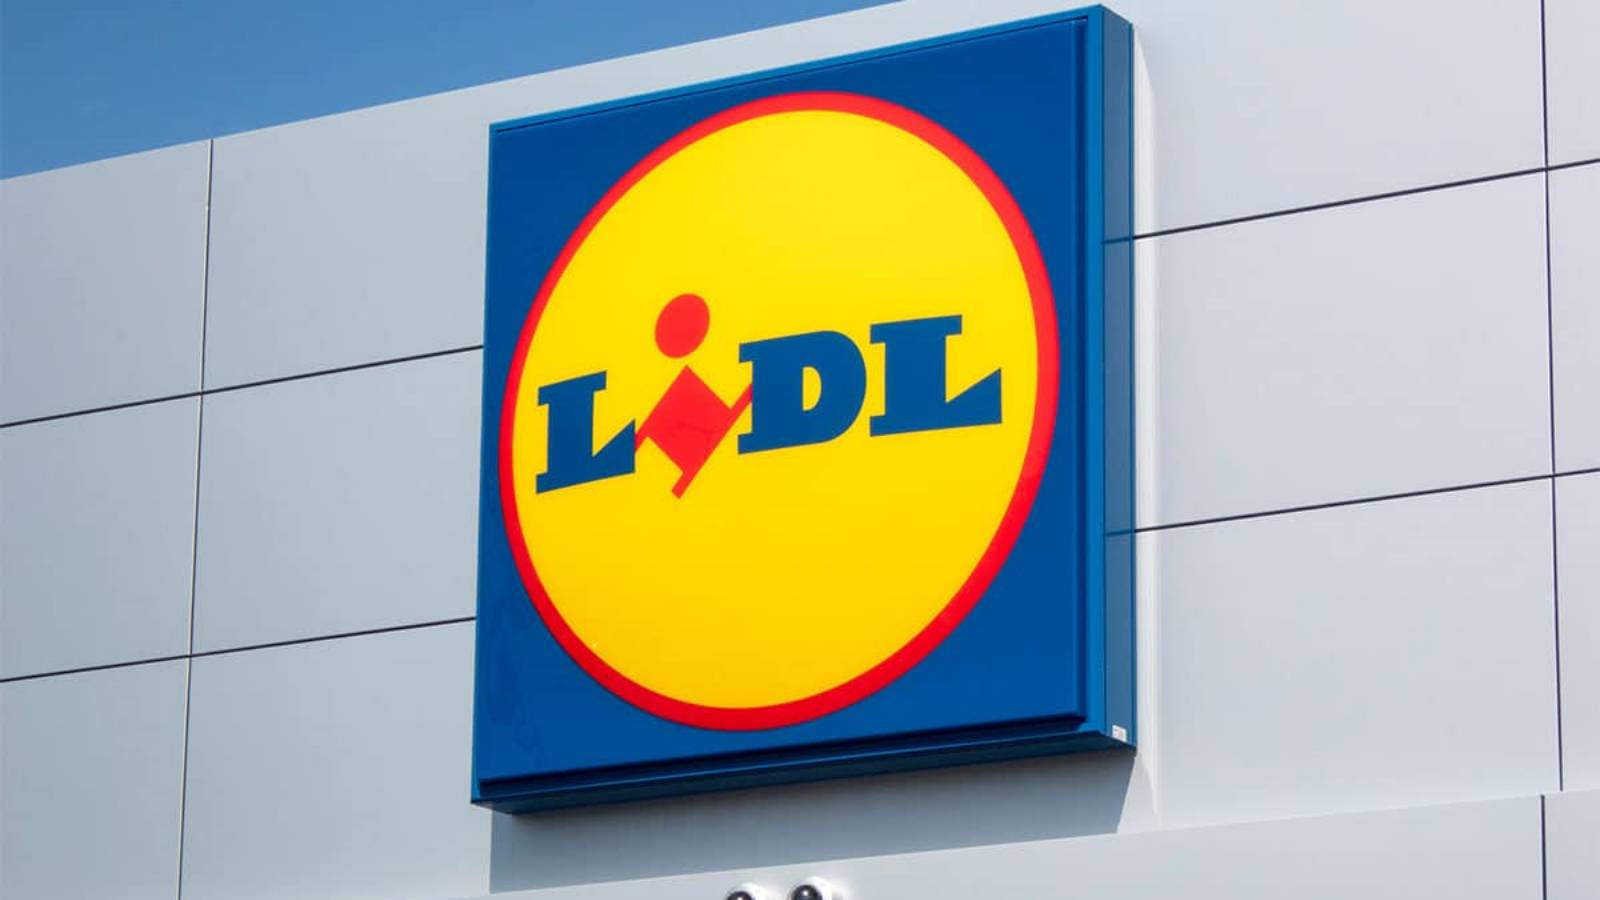 LIDL Romania tuotteet